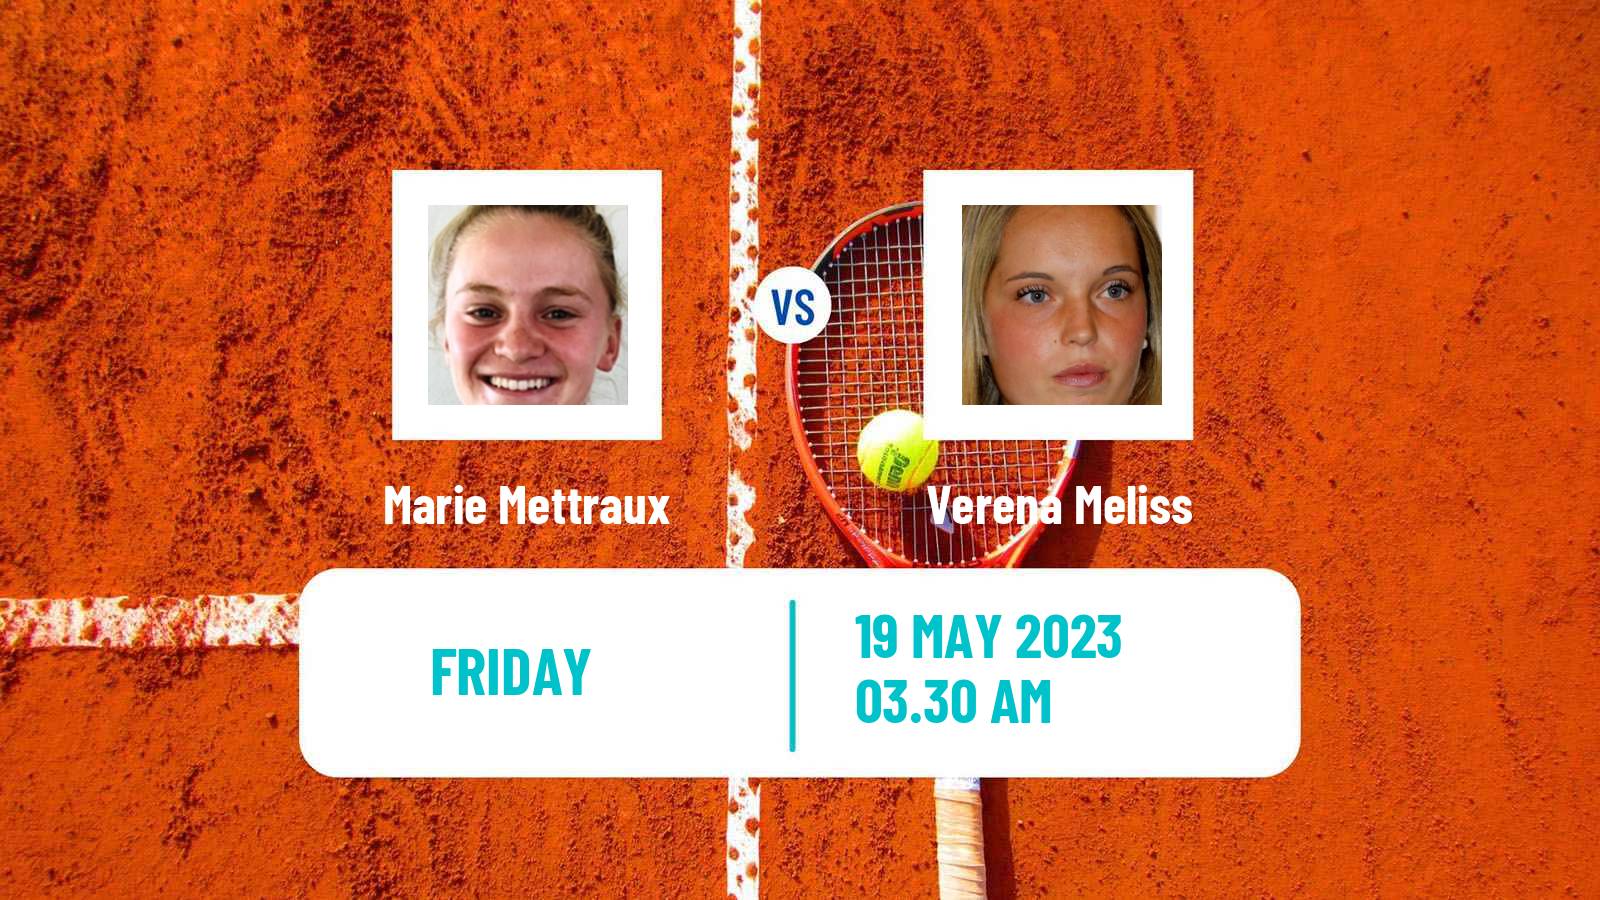 Tennis ITF W15 Antalya 16 Women Marie Mettraux - Verena Meliss